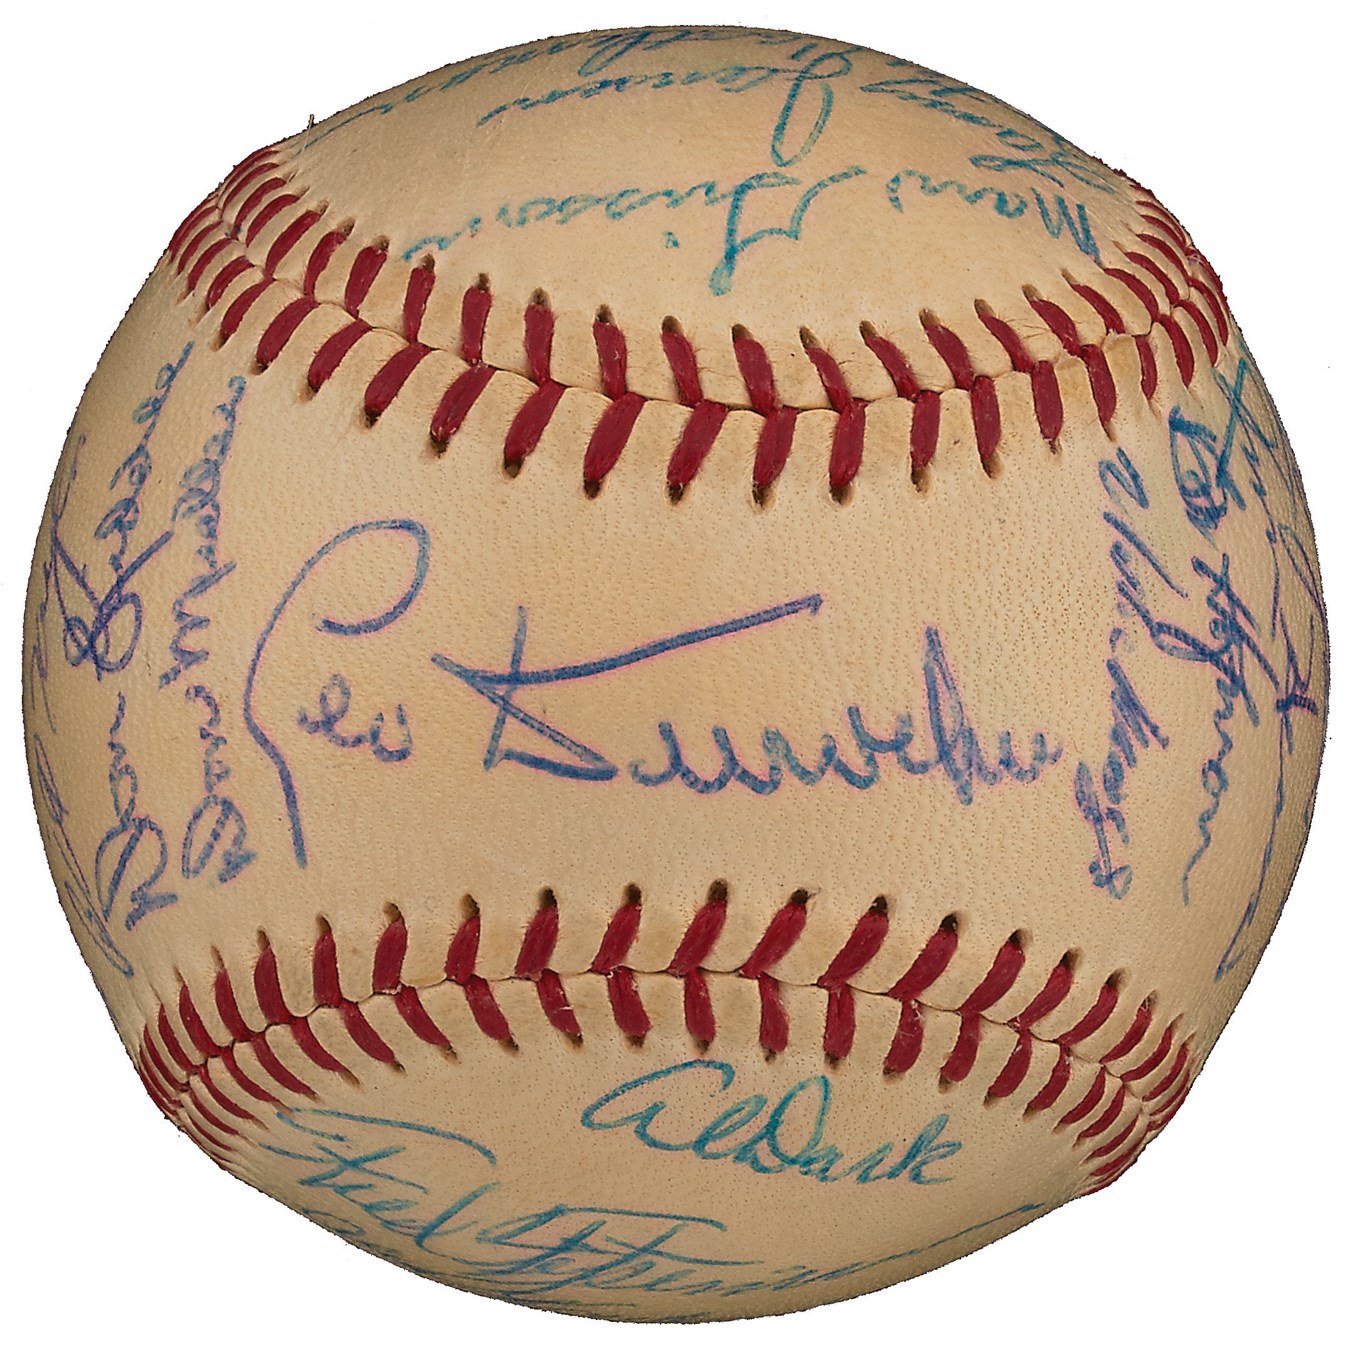 Baseball Autographs - 1954 World Champion New York Giants Team-Signed Baseball (PSA 8.5, Highest Graded)